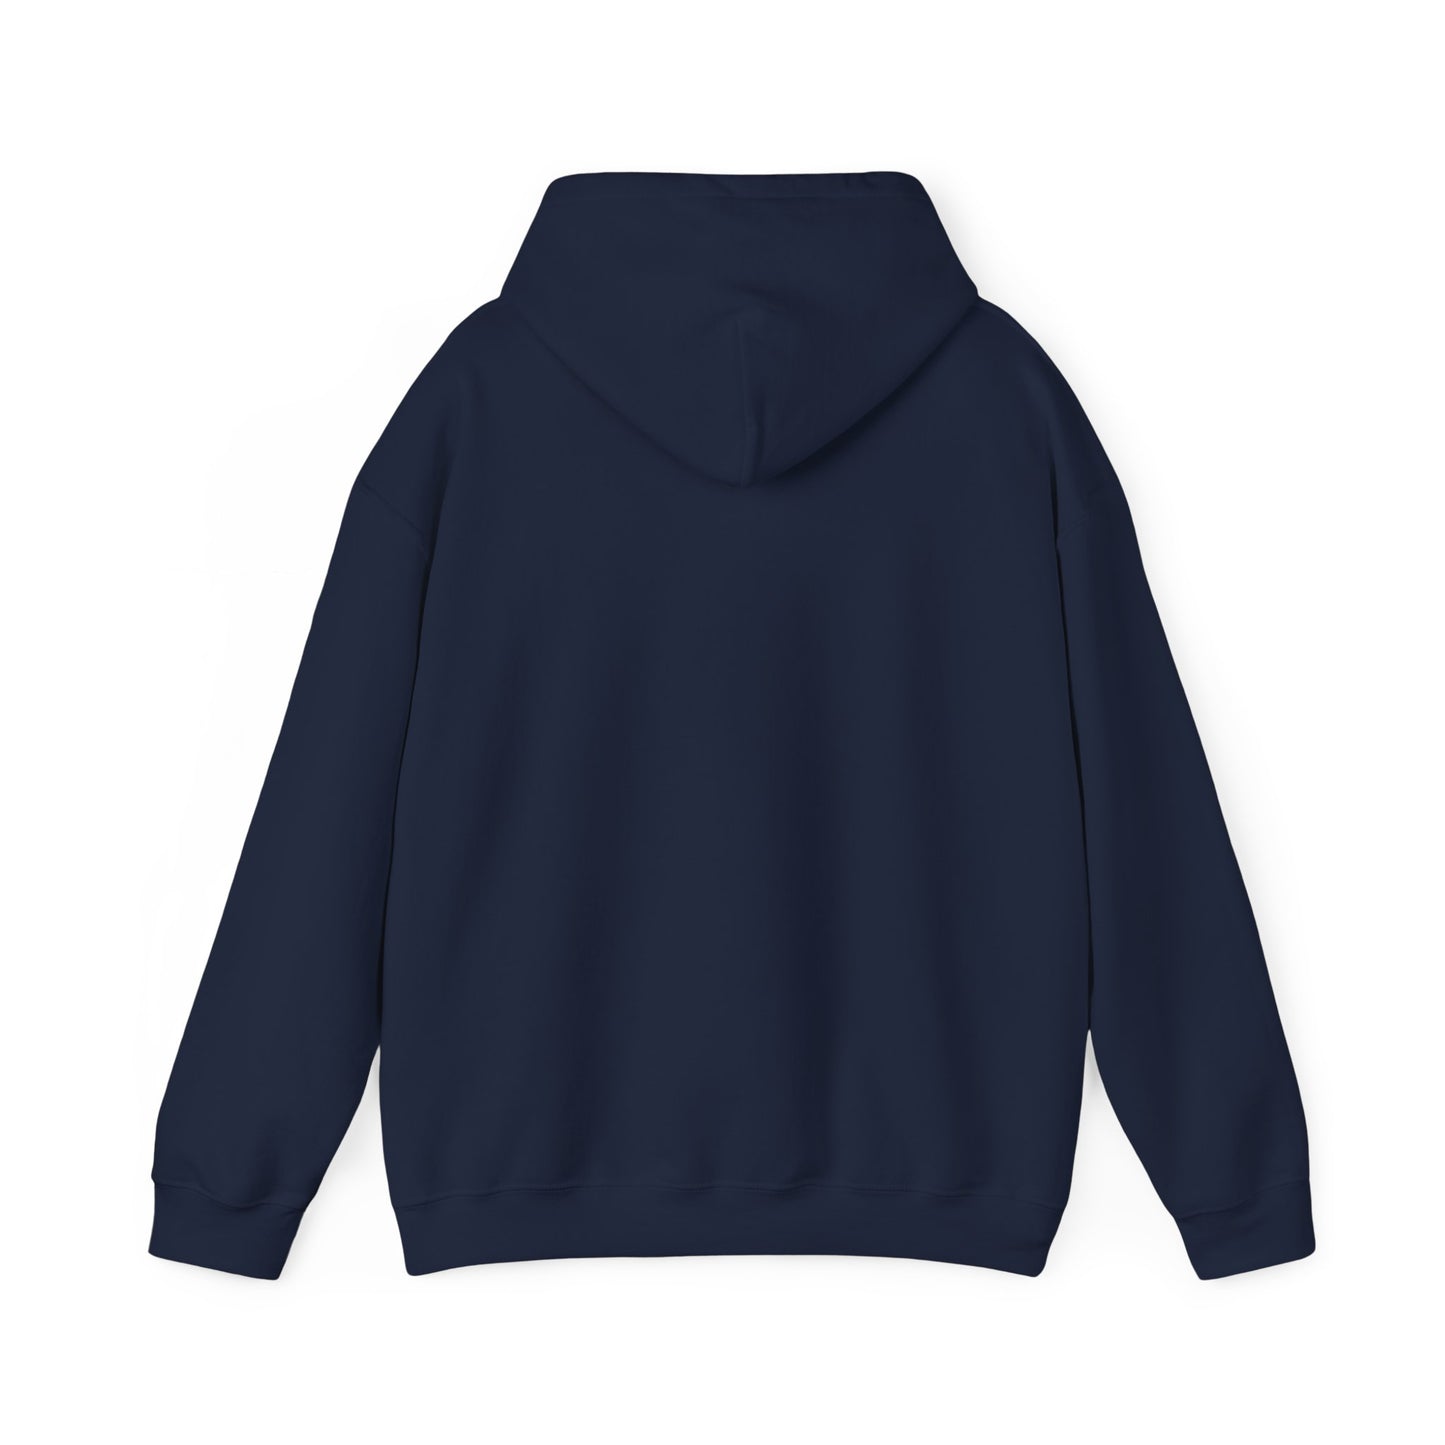 Penn State Bows Field Logo Hooded Sweatshirt